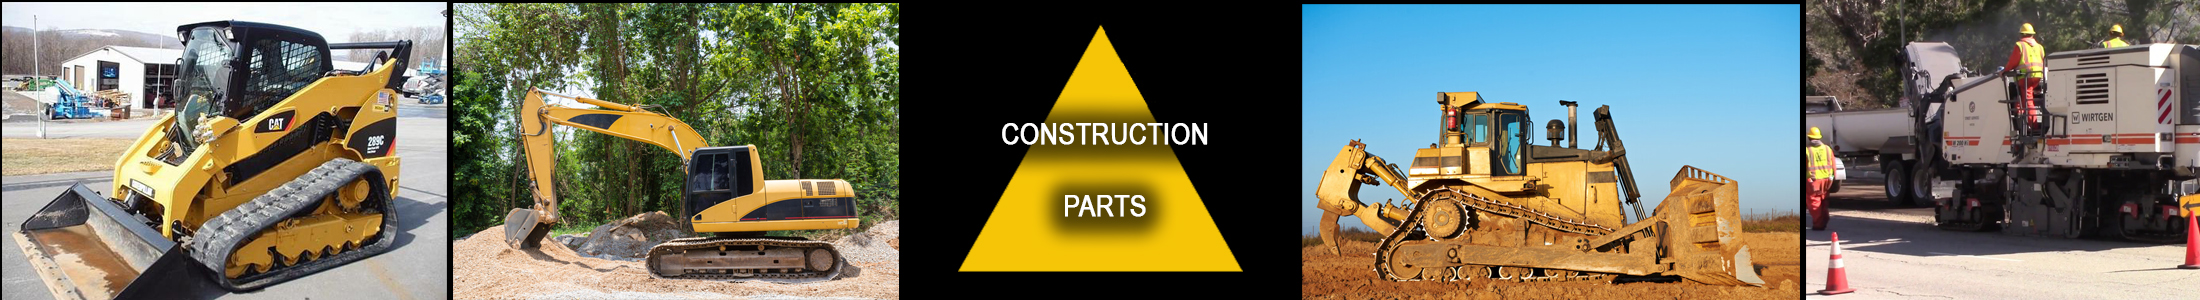 Construction_parts2